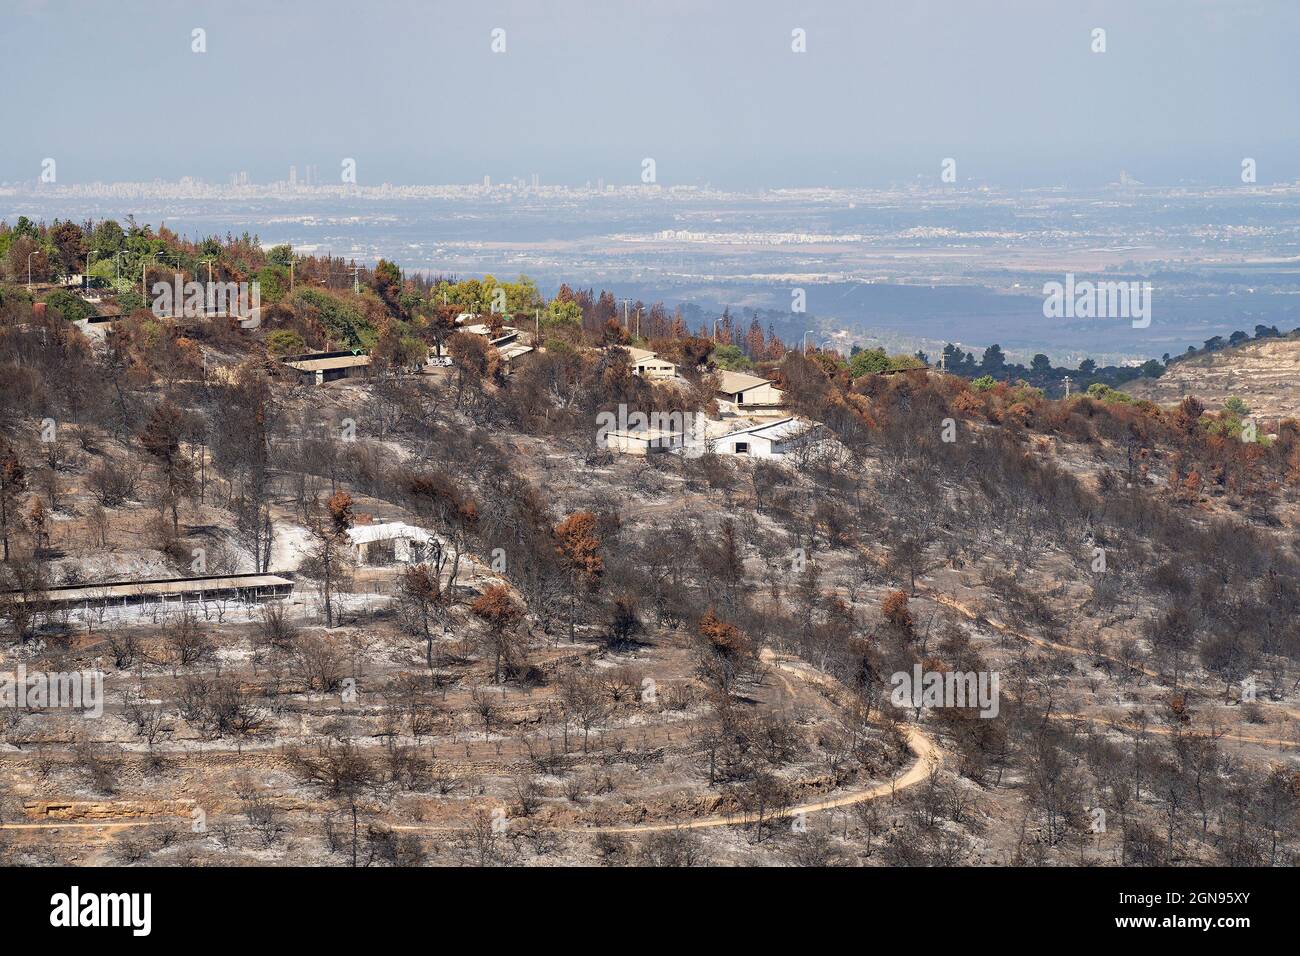 Landwirtschaftliche Gebäude brannten in einem Waldbrand, der in den Judäa-Bergen in der Nähe von Jerusalem, Israel, stattfand. Israels Küstenebene ist in der Dunstigen zu sehen Stockfoto